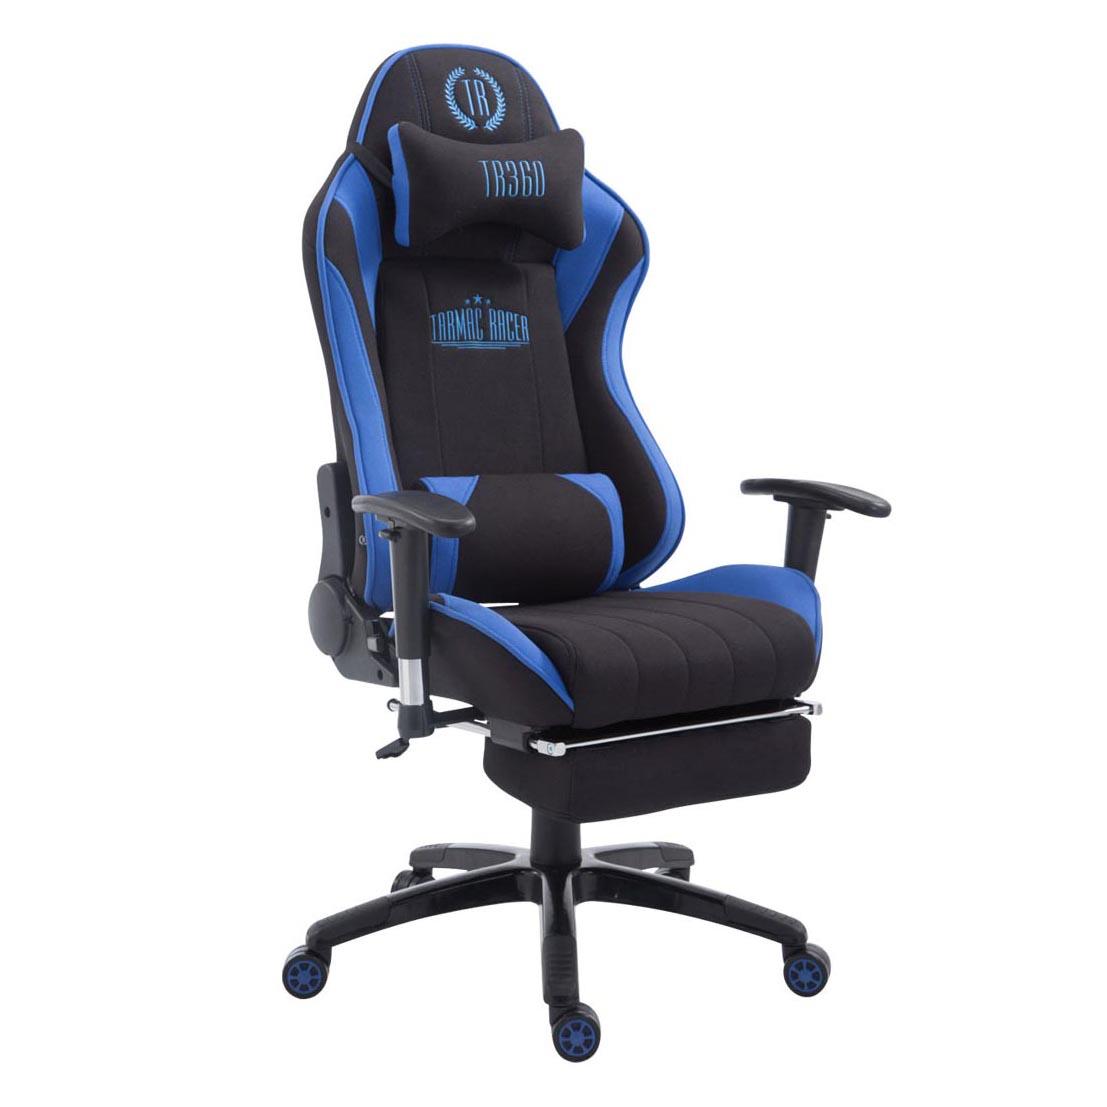 Gaming-Stuhl TURBO STOFF mit Fußablage, neigbare Rückenlehne, Nacken- und Lordosekissen, Farbe Schwarz / Blau